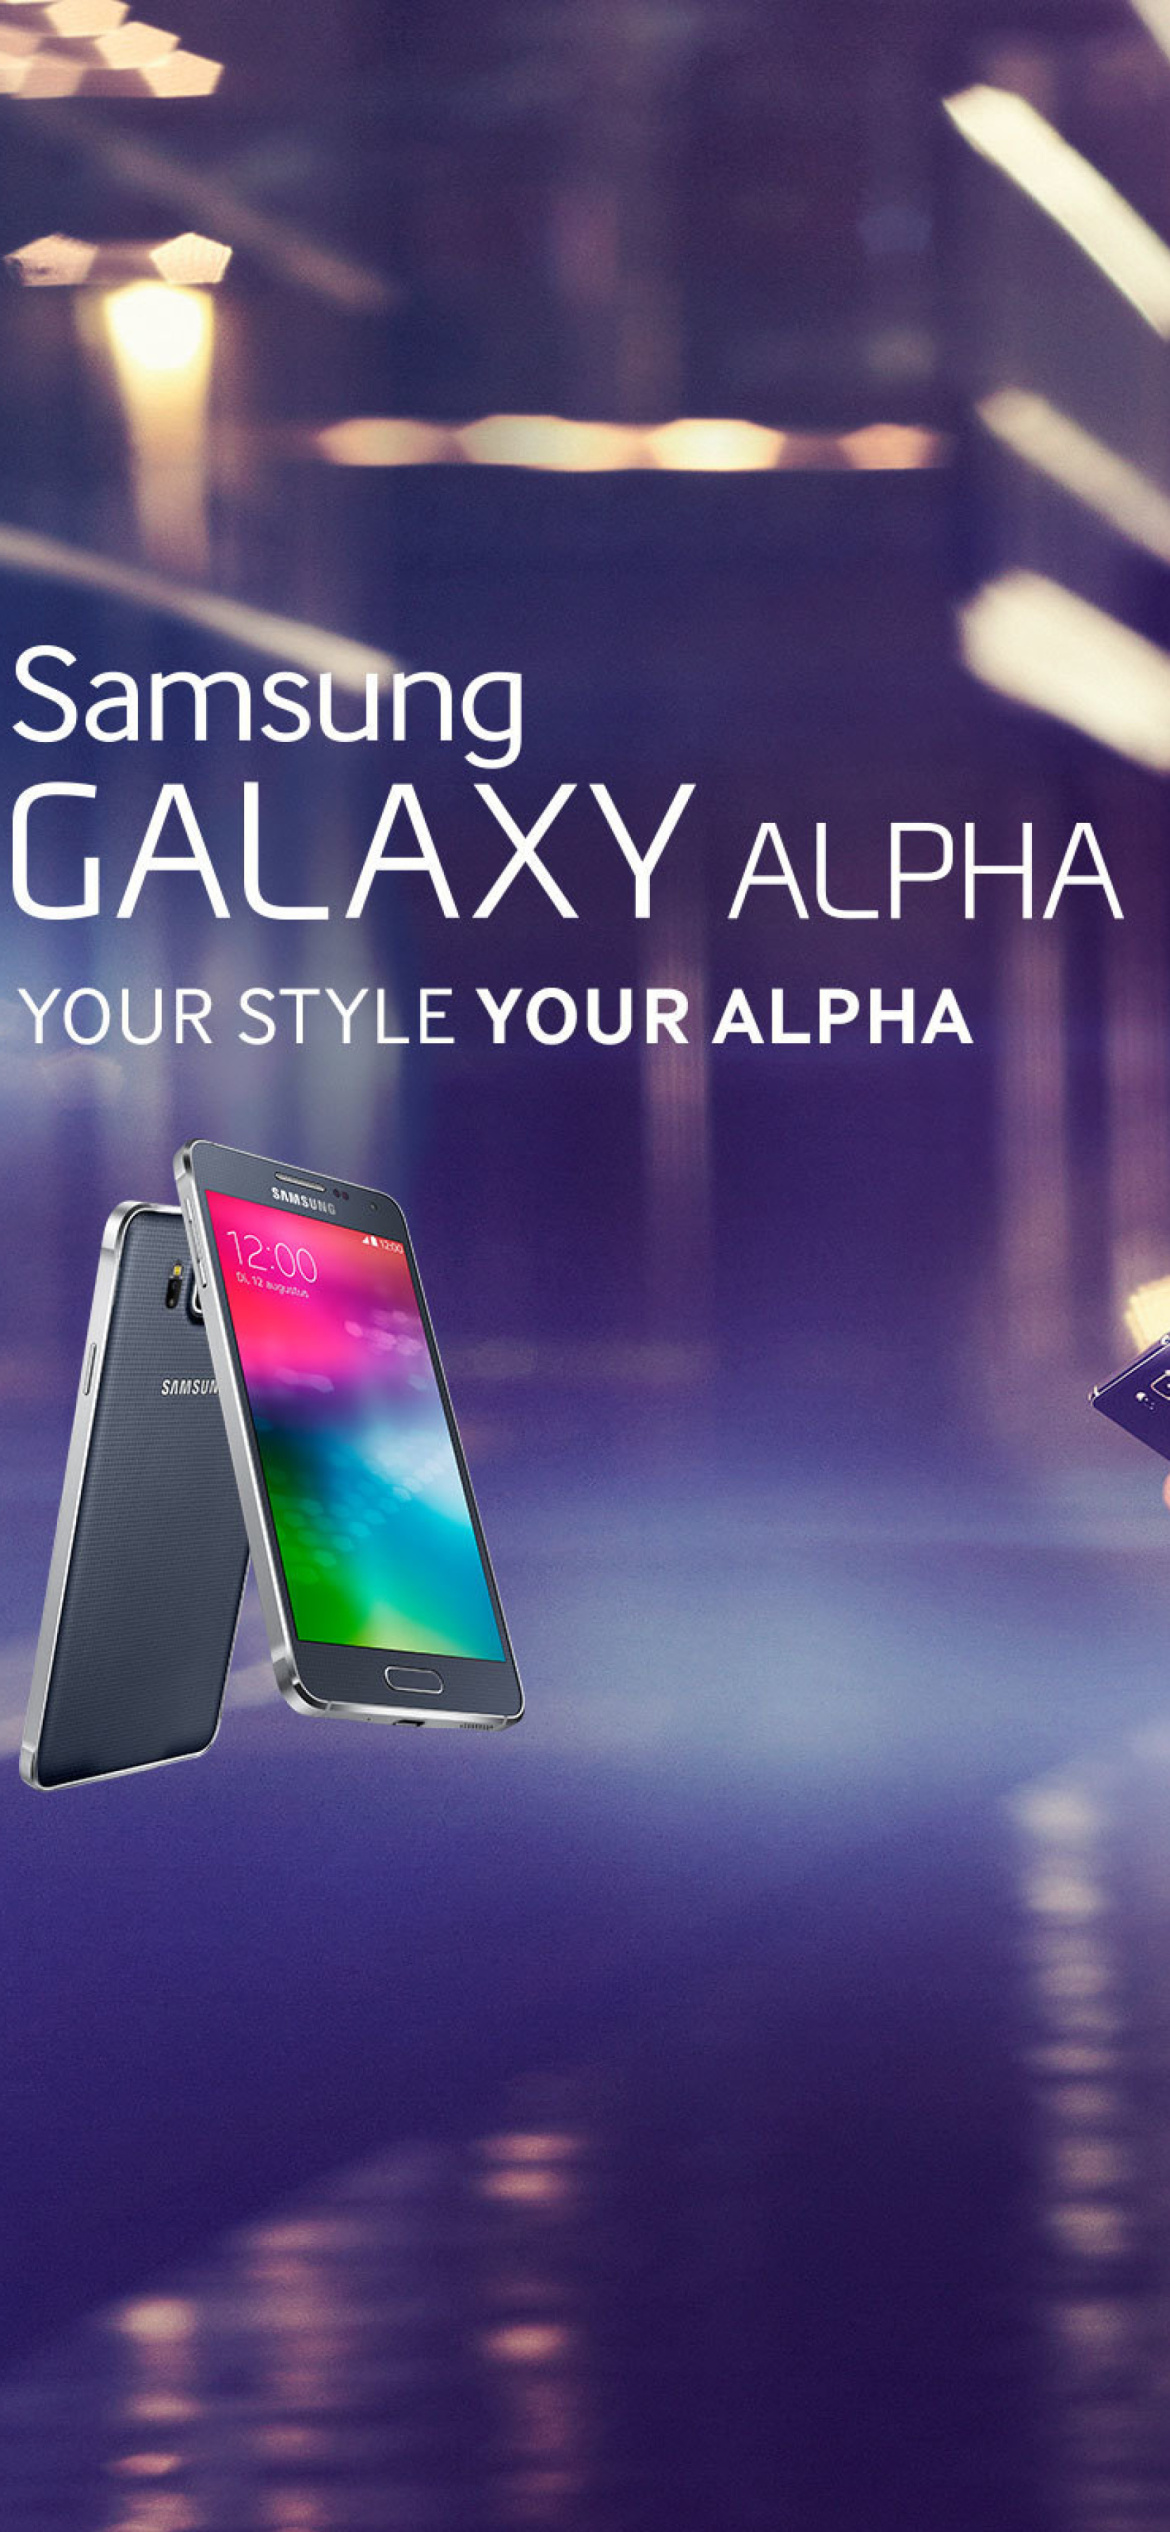 Samsung Galaxy Alpha Advertisement with Doutzen Kroes wallpaper 1170x2532